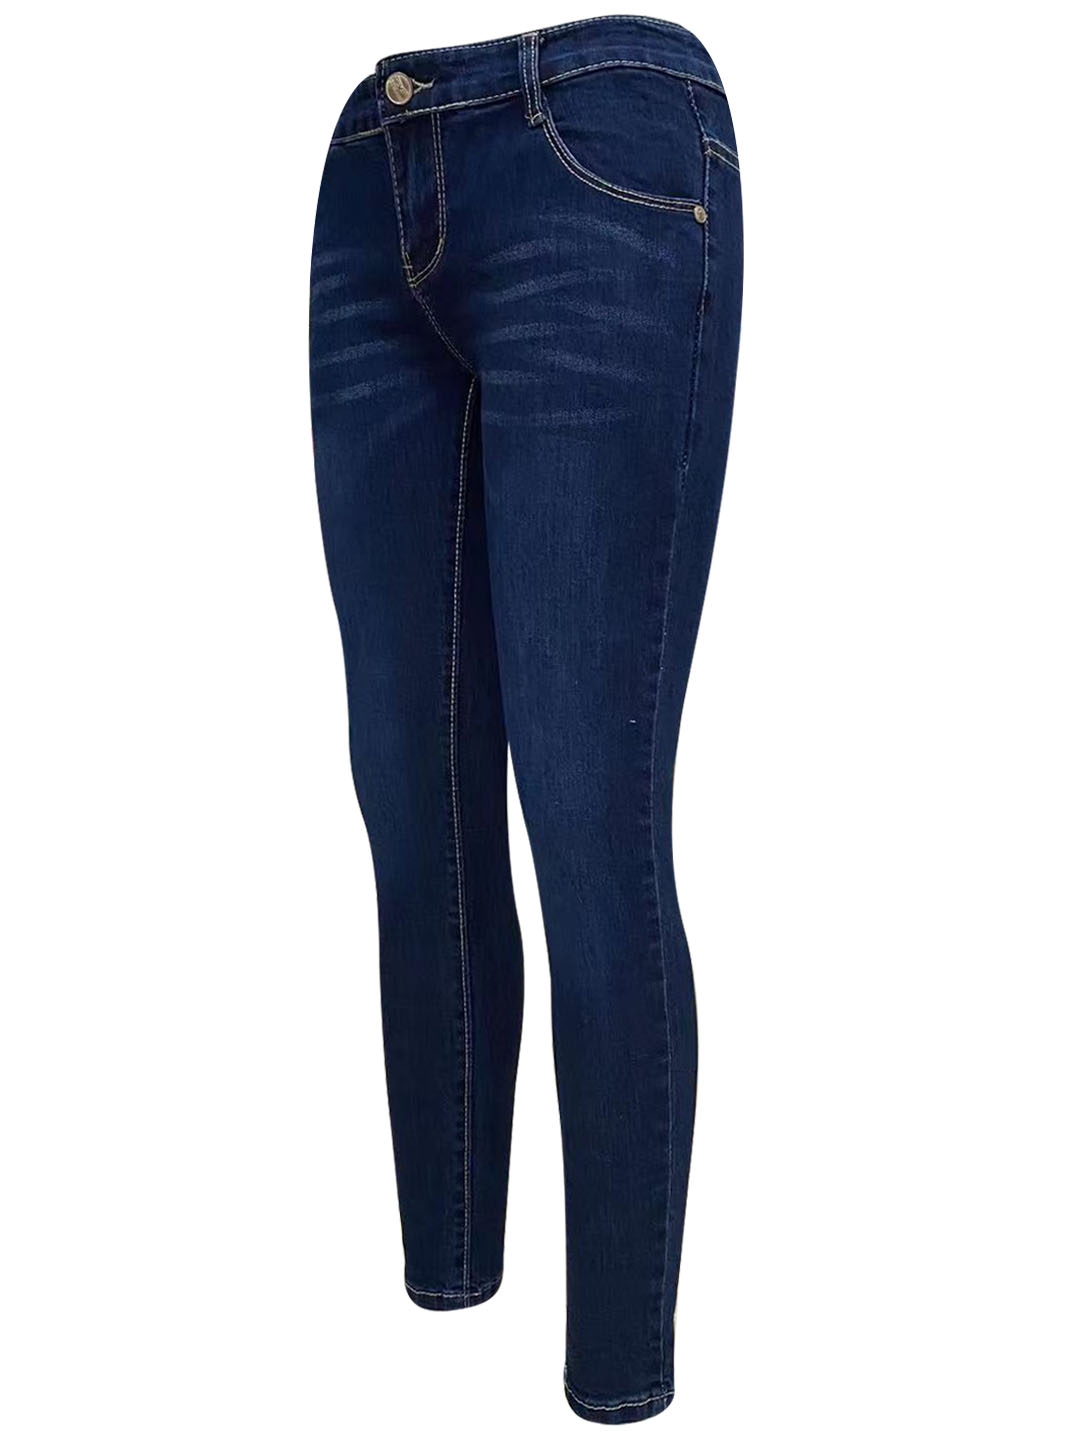 Buy Dark Blue High Rise Skinny Jeans For Women - ONLY-lmd.edu.vn